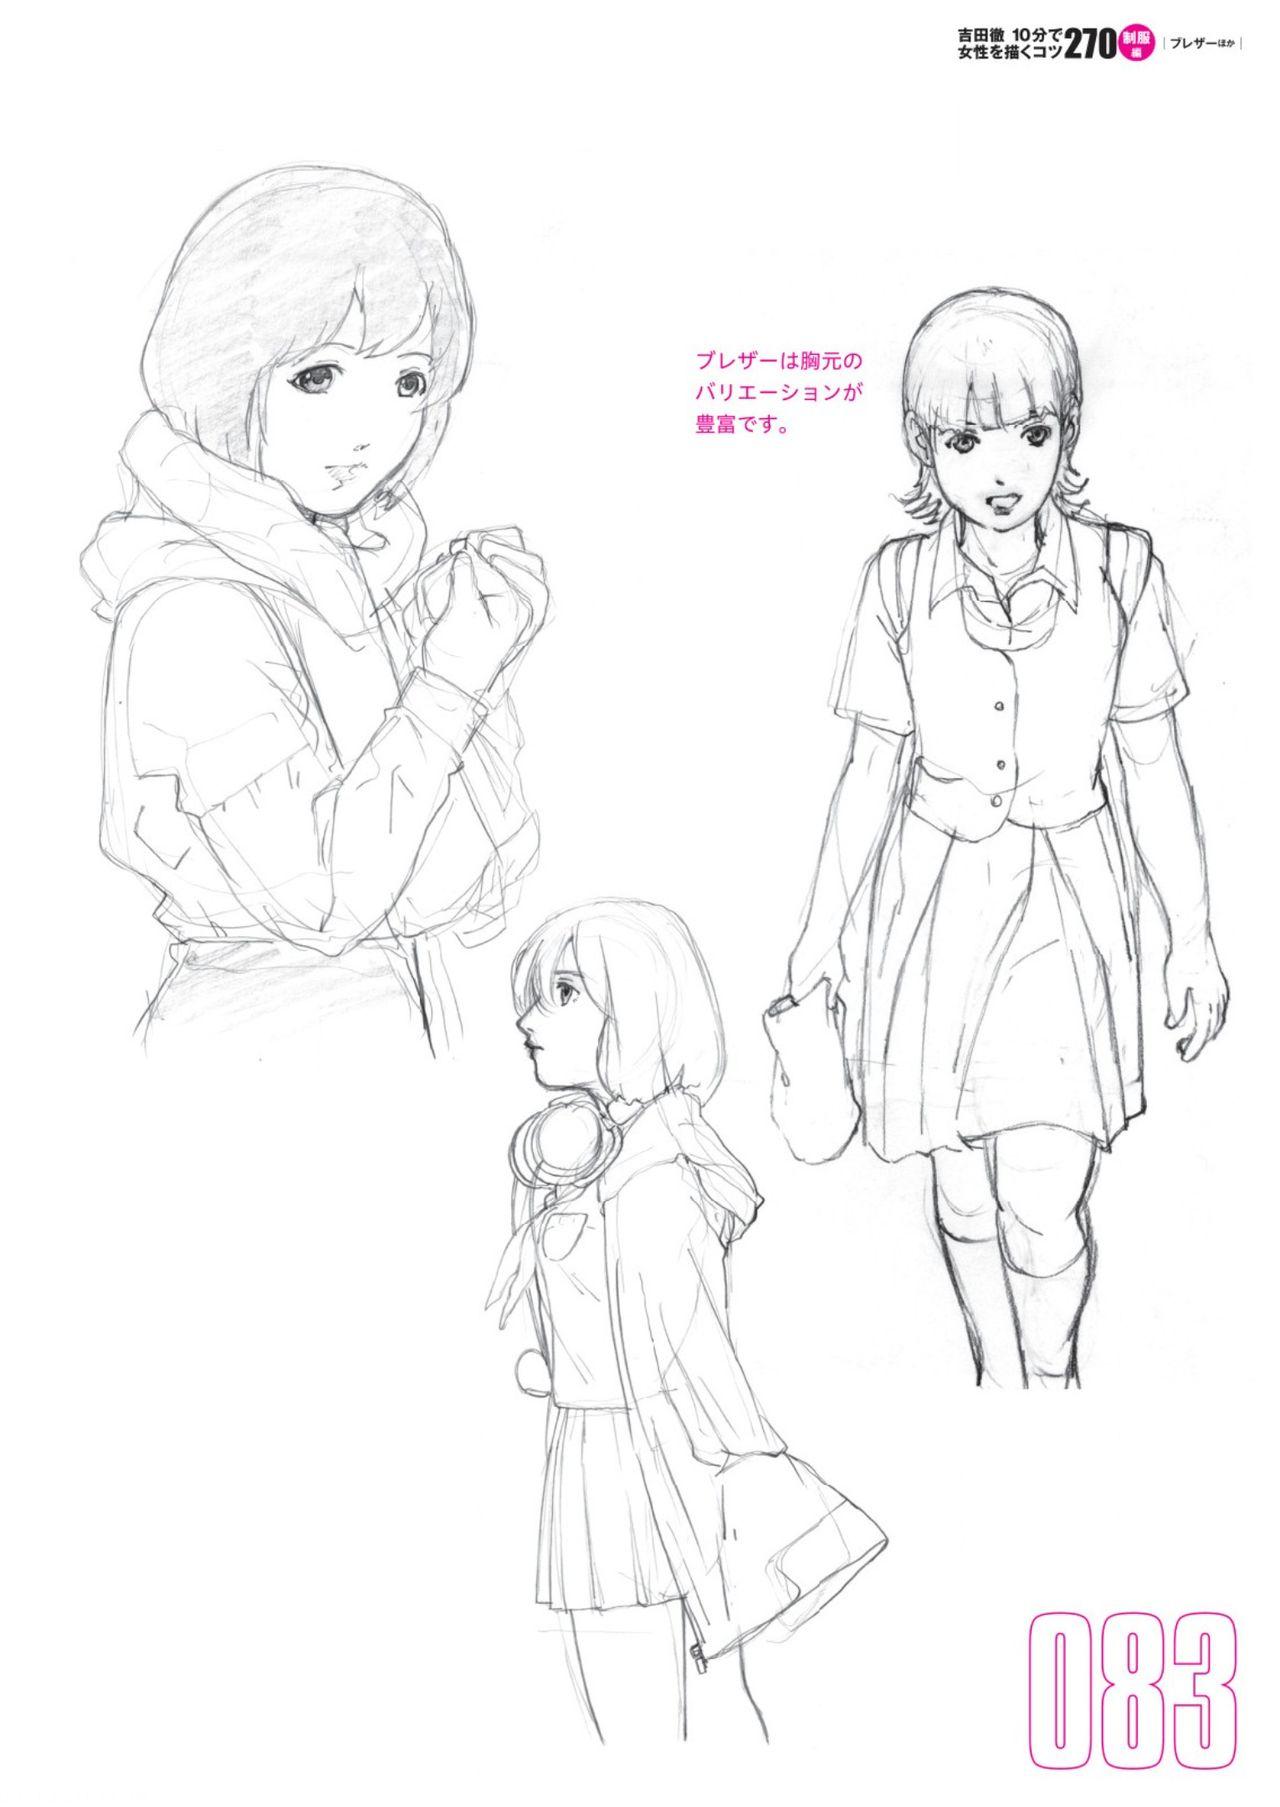 Toru Yoshida Tips for drawing women in 10 minutes 270 Uniforms 84